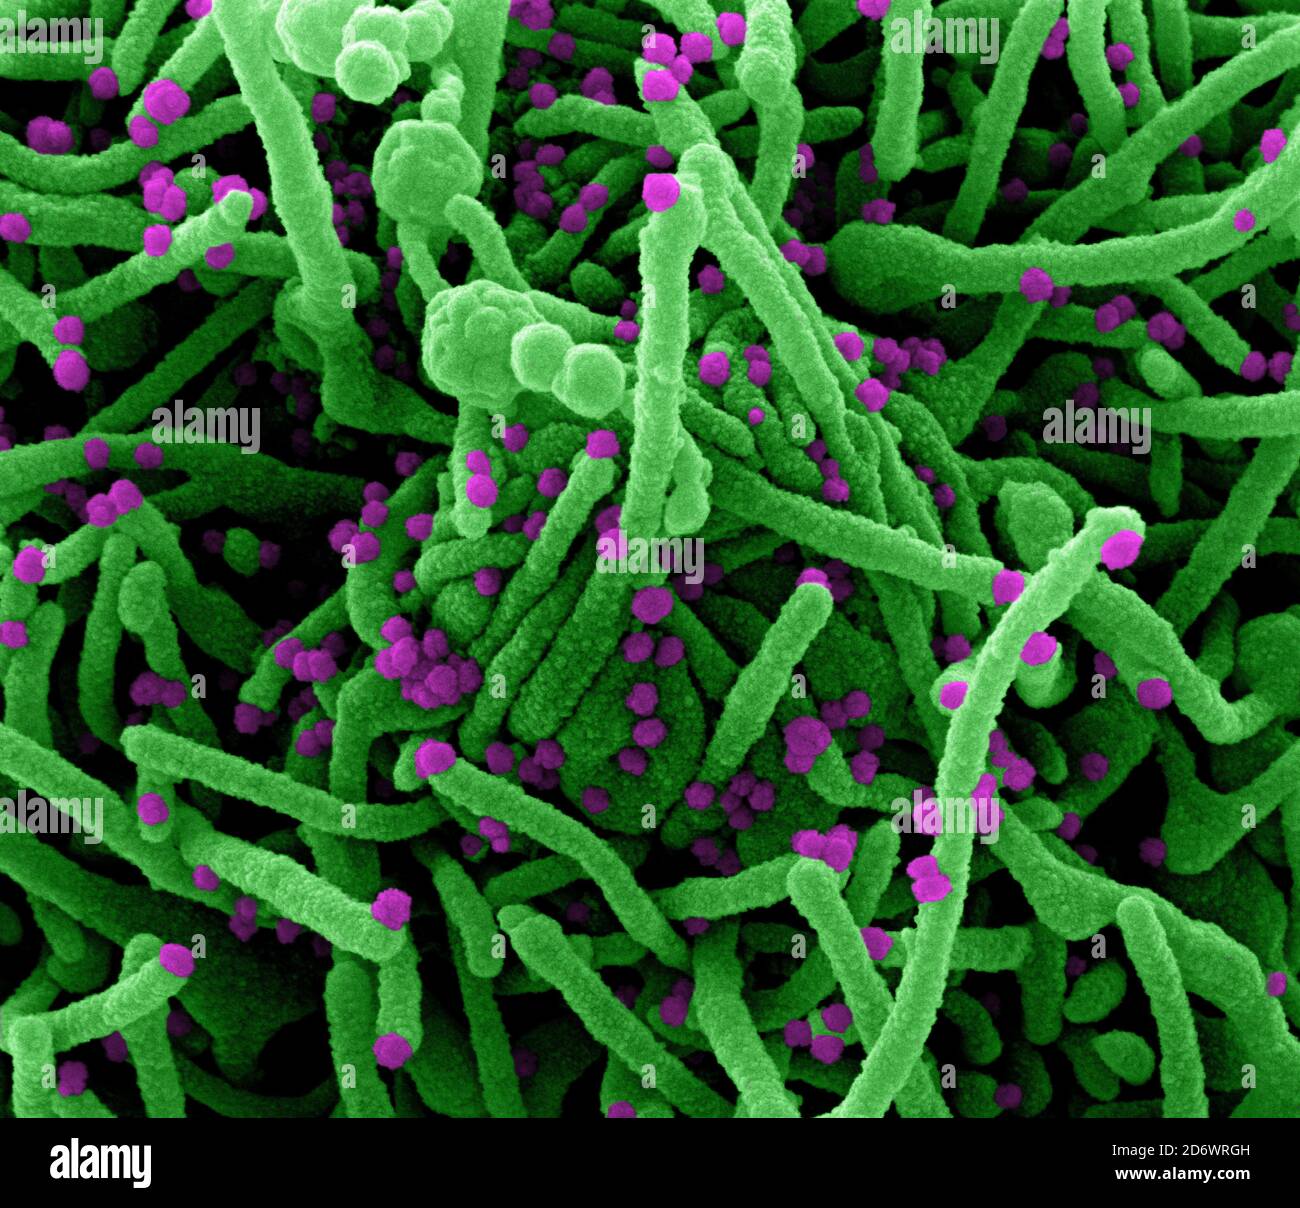 Micrografía electrónica de exploración coloreada de una célula (verde) infectada con partículas del virus SARS-COV-2 (púrpura), aislada de una muestra de paciente. capt. Imagen Foto de stock